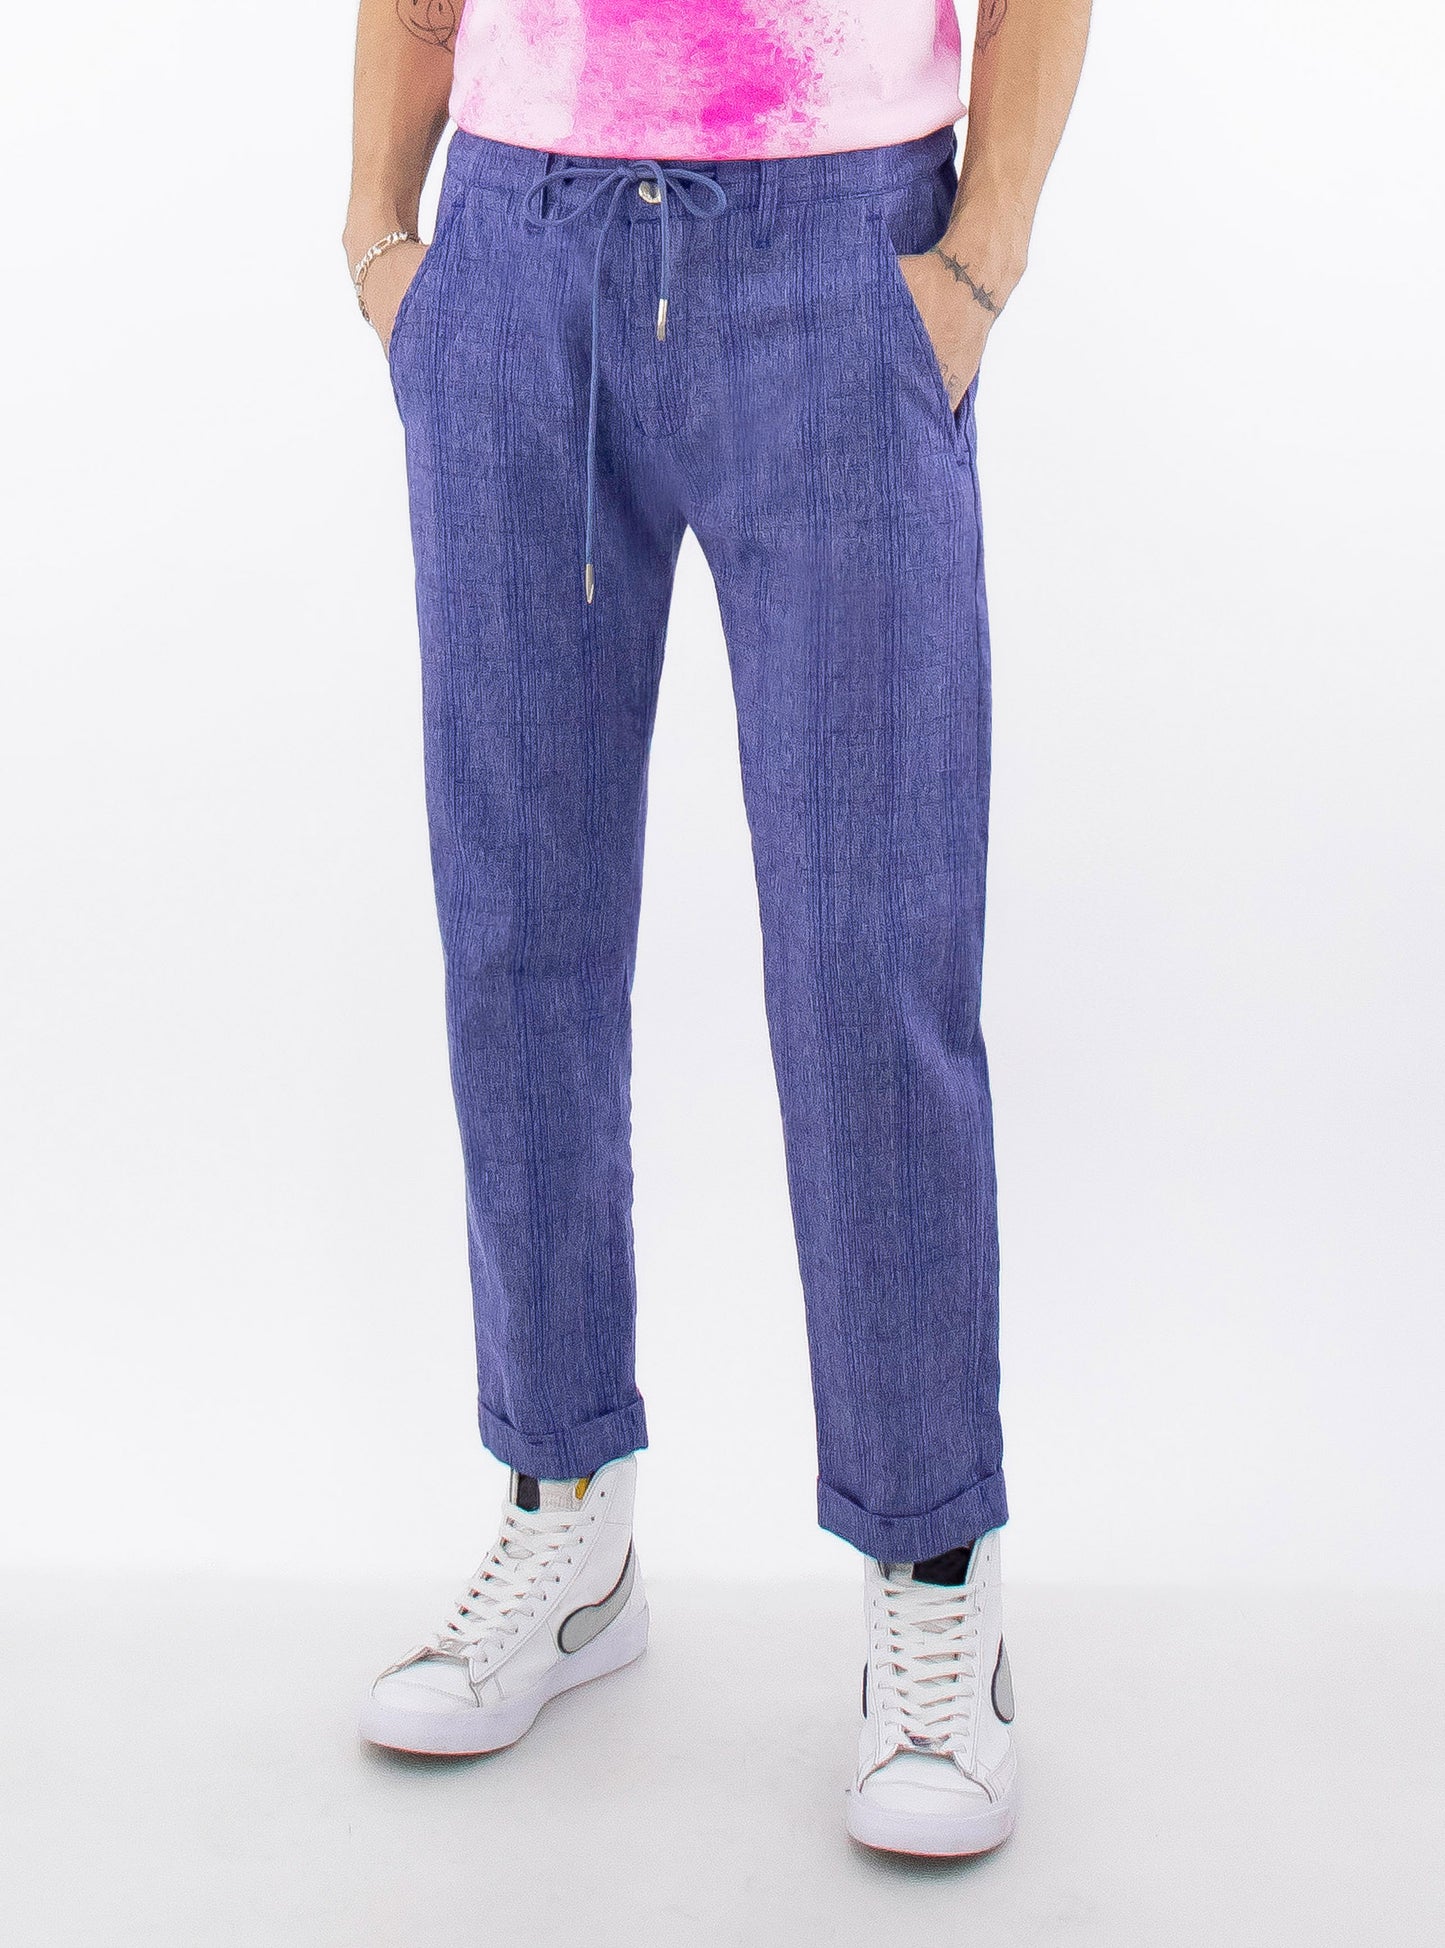 Pantalon slim con cuadrícula de color azul